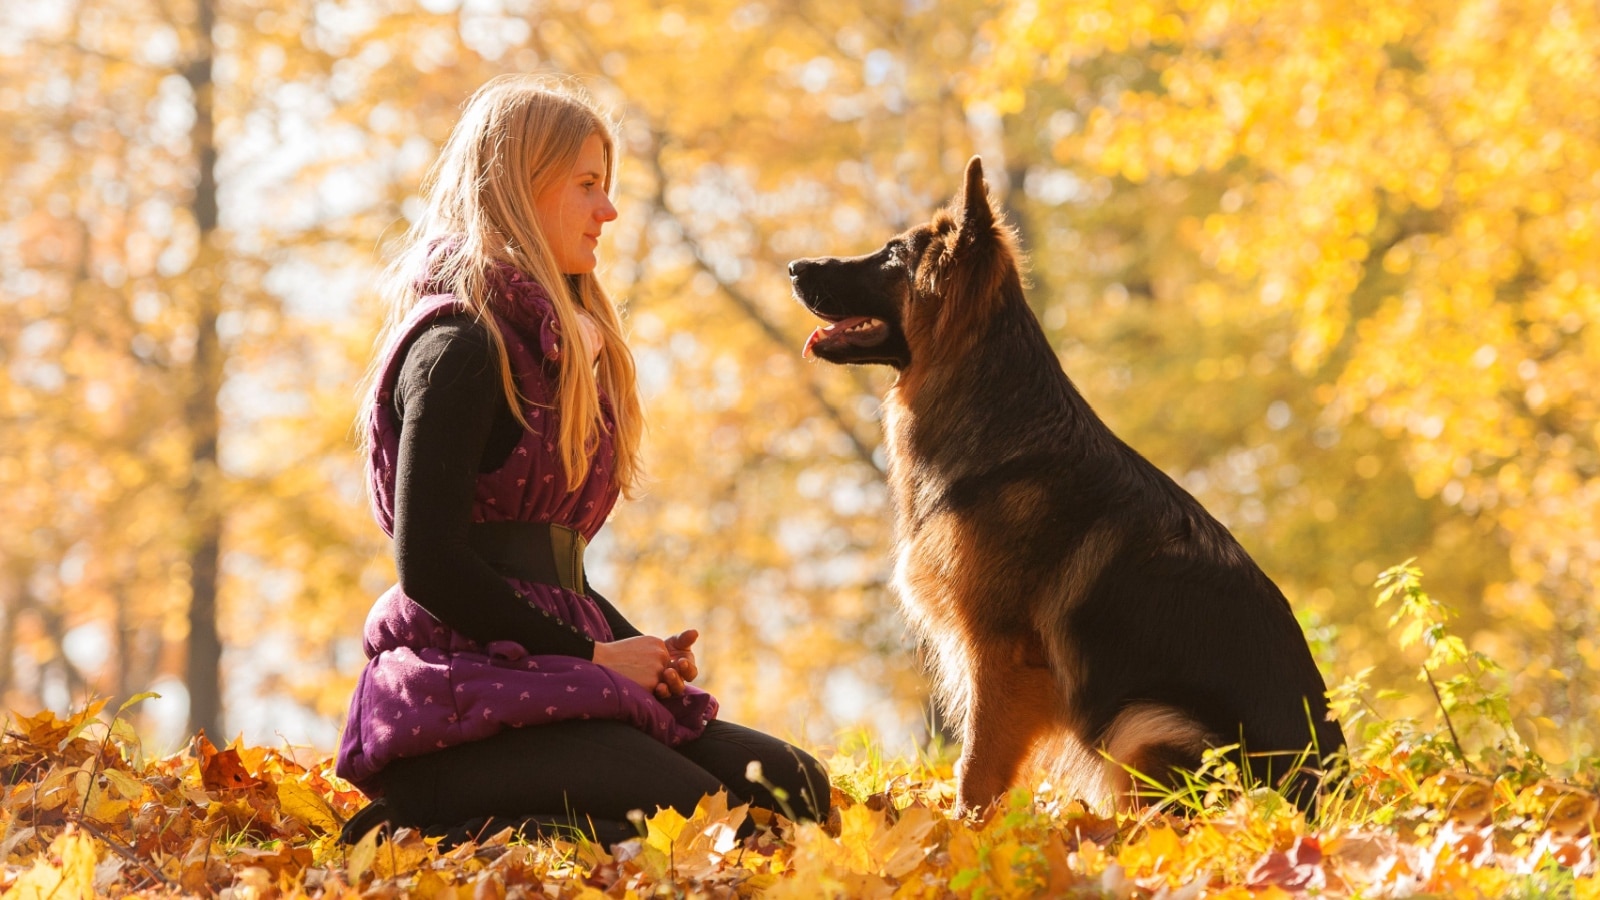 German Shepherd Dog and woman.